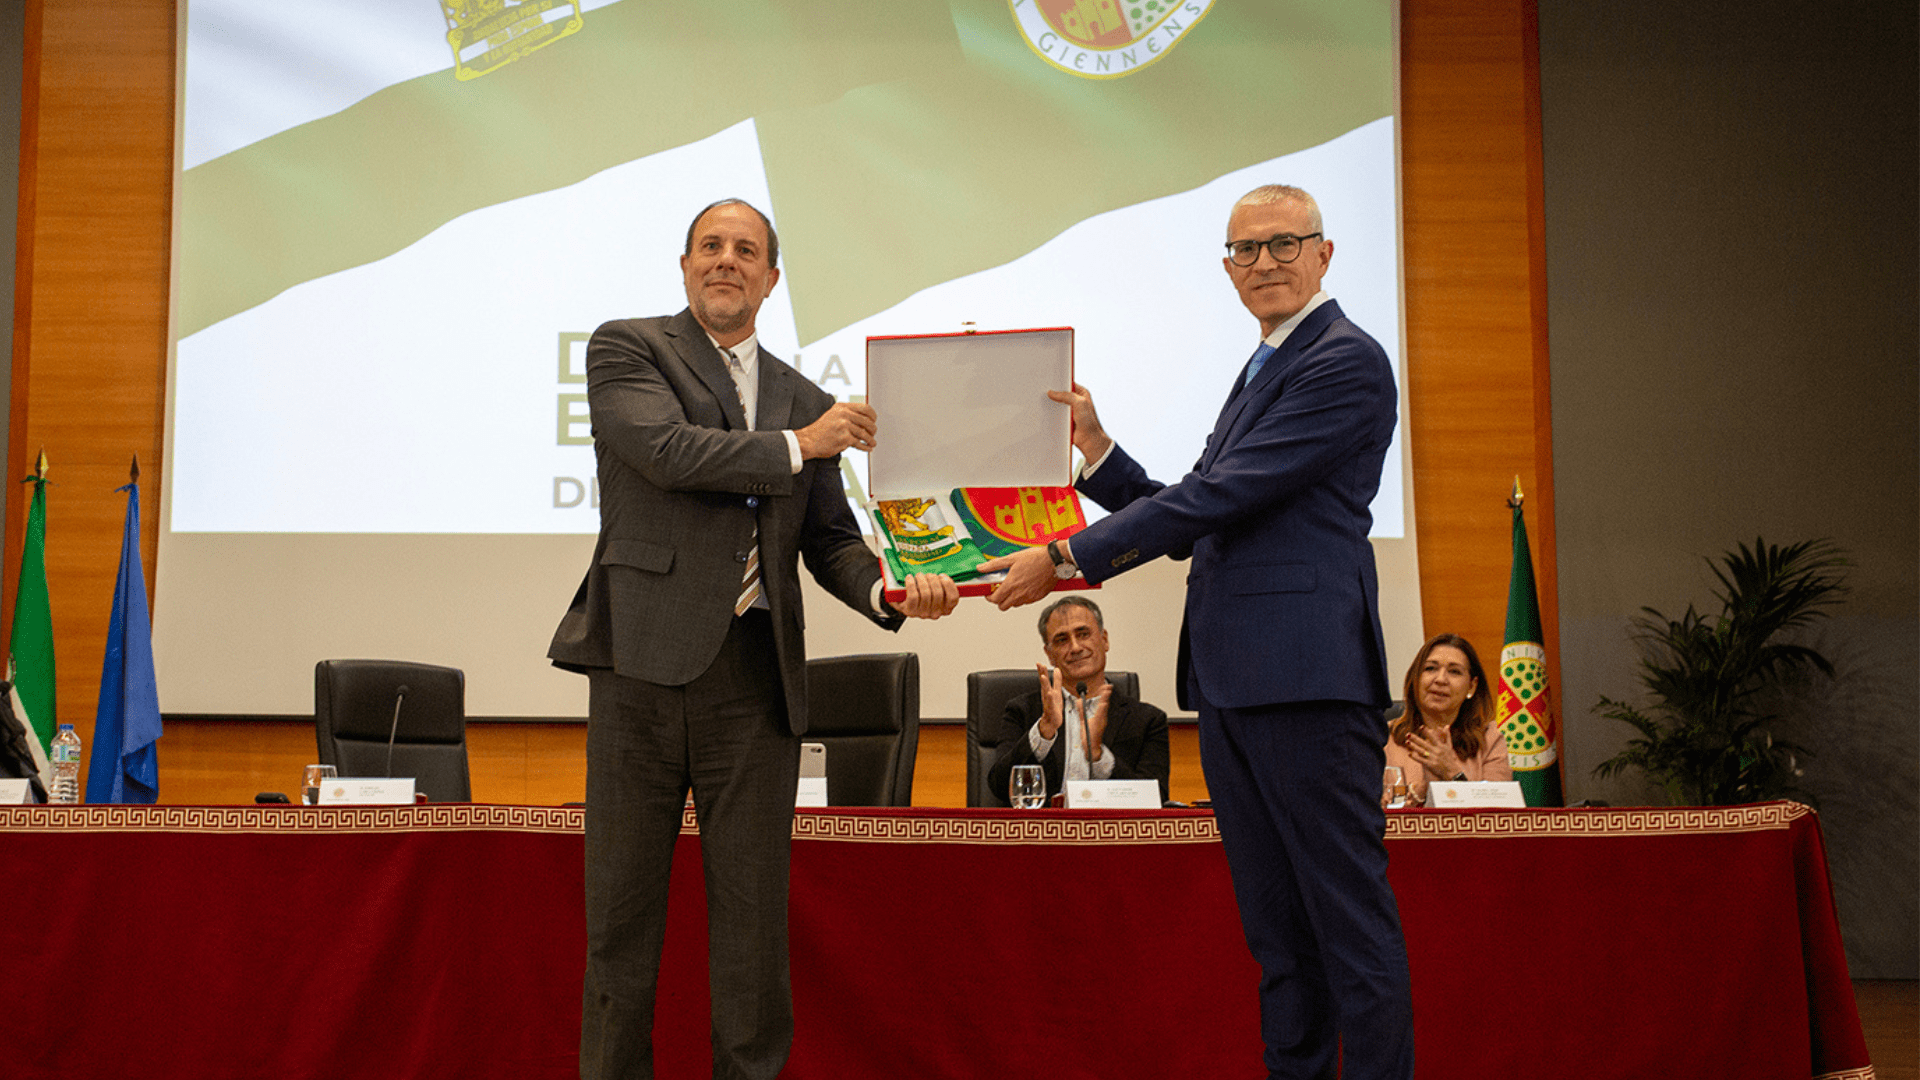 Emilio Lara y el orgullo de pertenecer a la UJA, a Jaén y a Andalucía